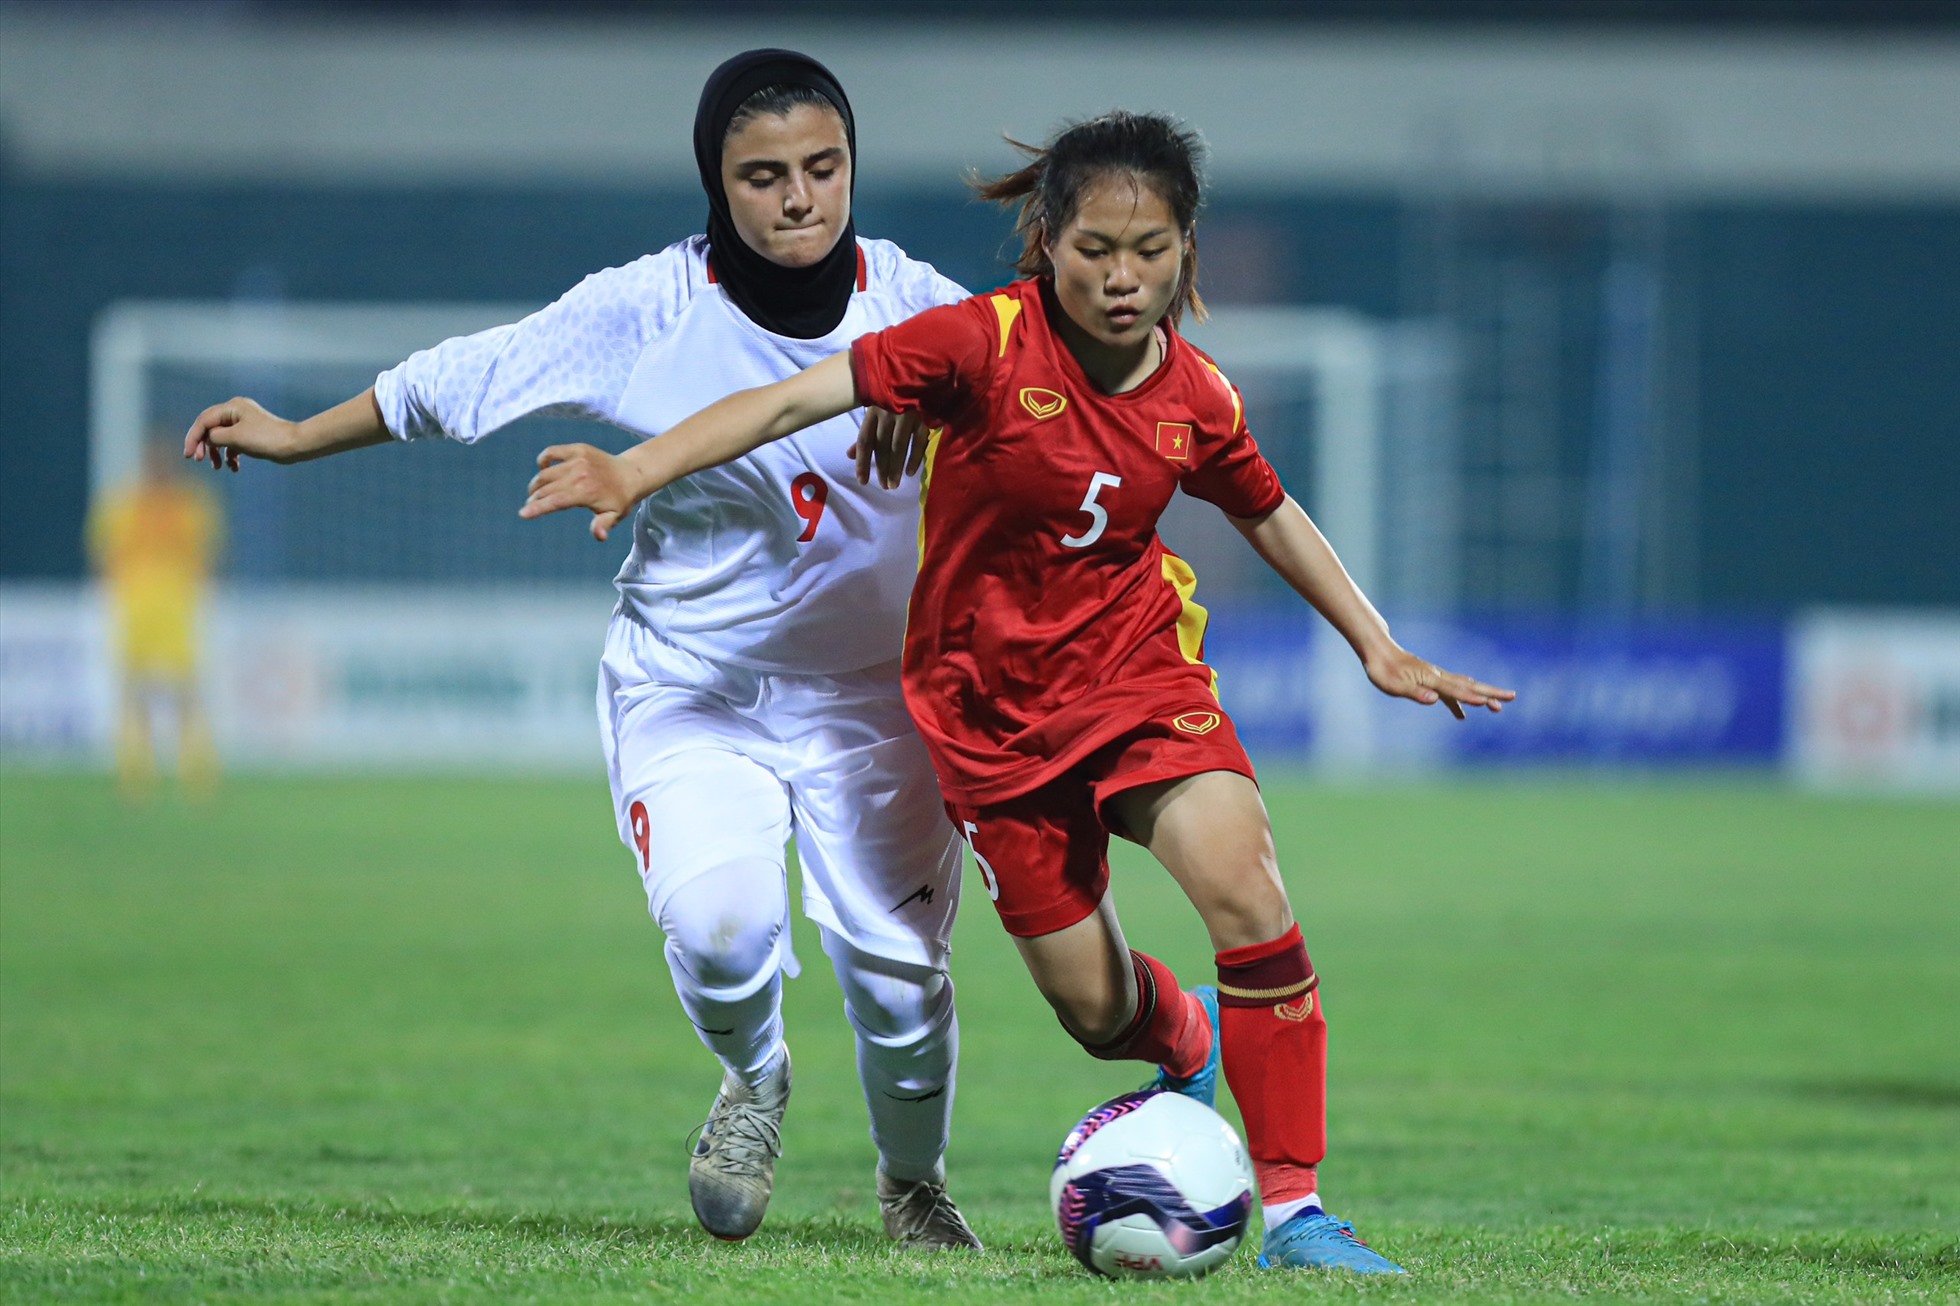 U20 nữ Việt Nam giành quyền kiểm soát bóng nhiều hơn so với đối thủ ở hiệp 2. Ảnh: Minh Dân